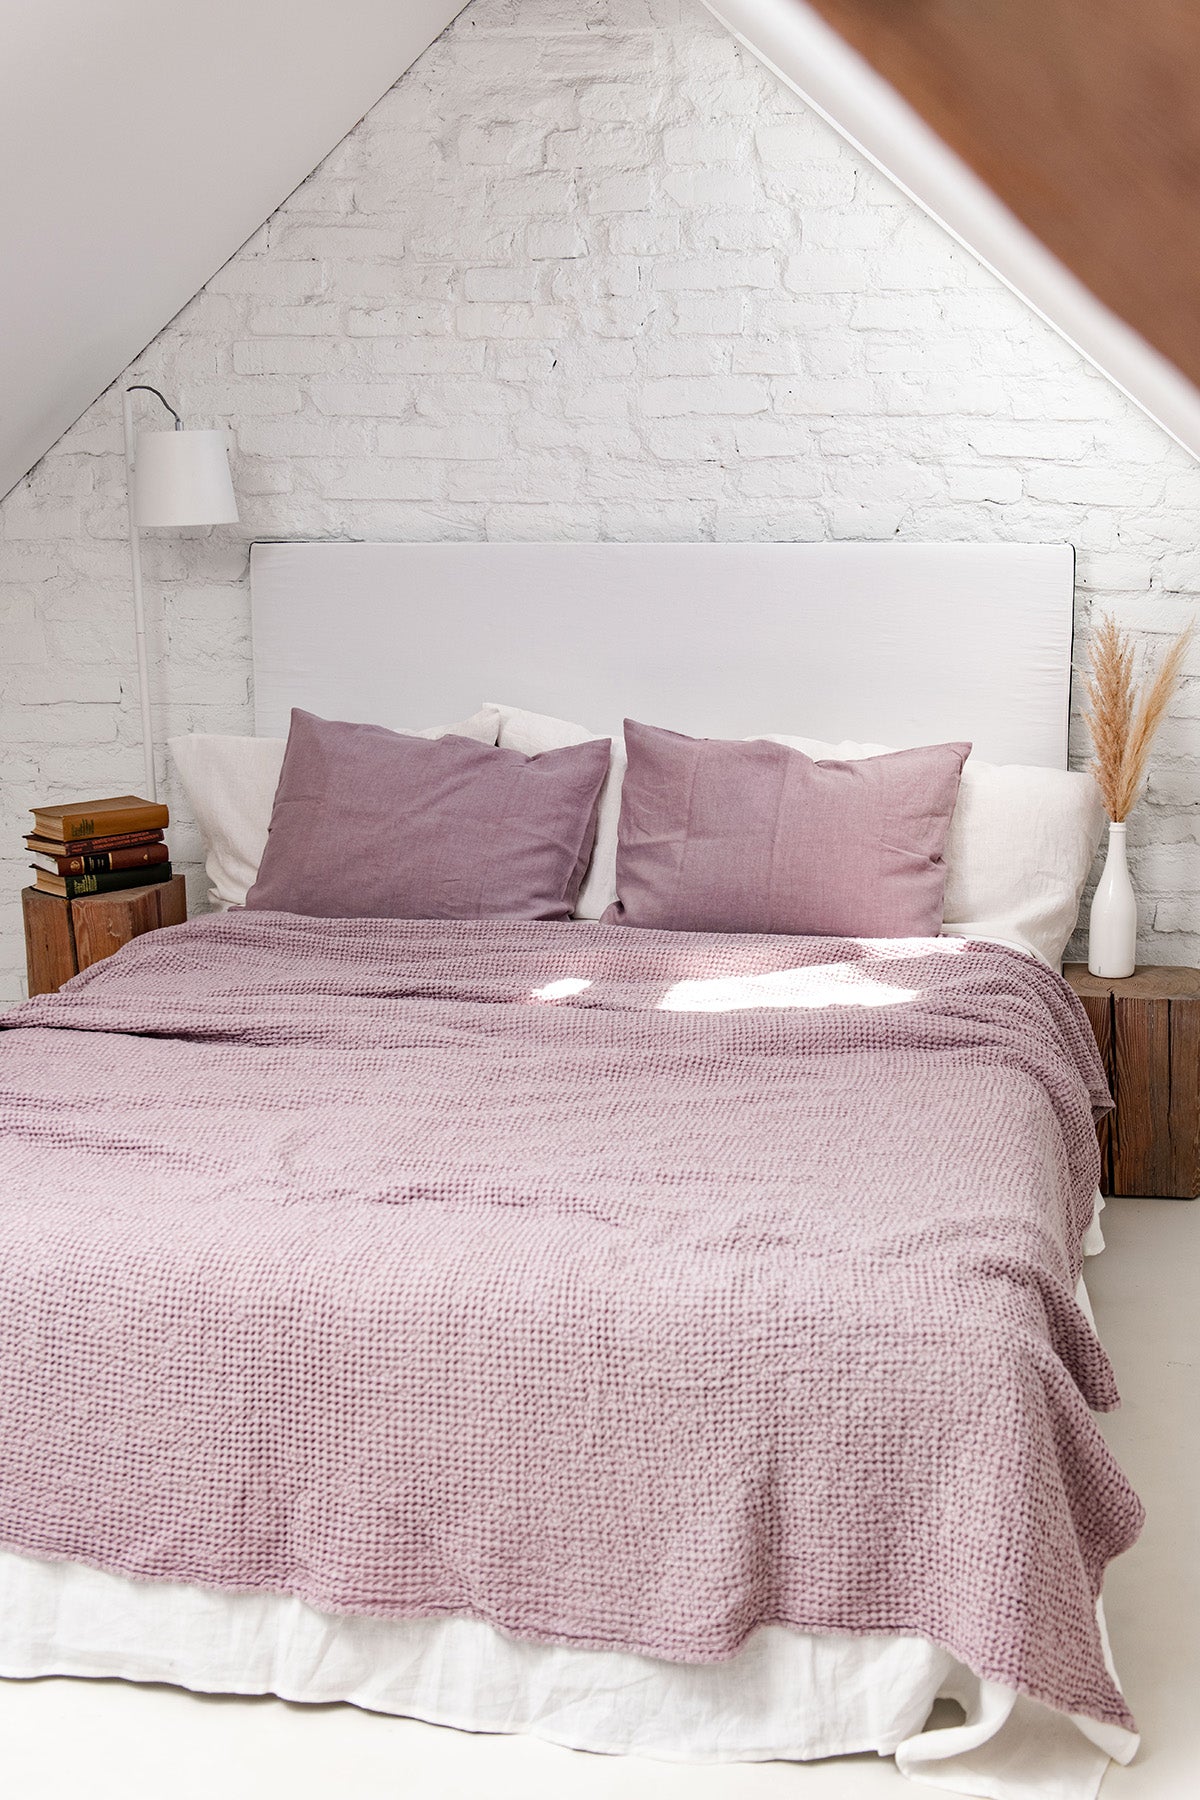 Dusty Rose Linen Waffle Blanket On Tidy Bed By AmourLinen